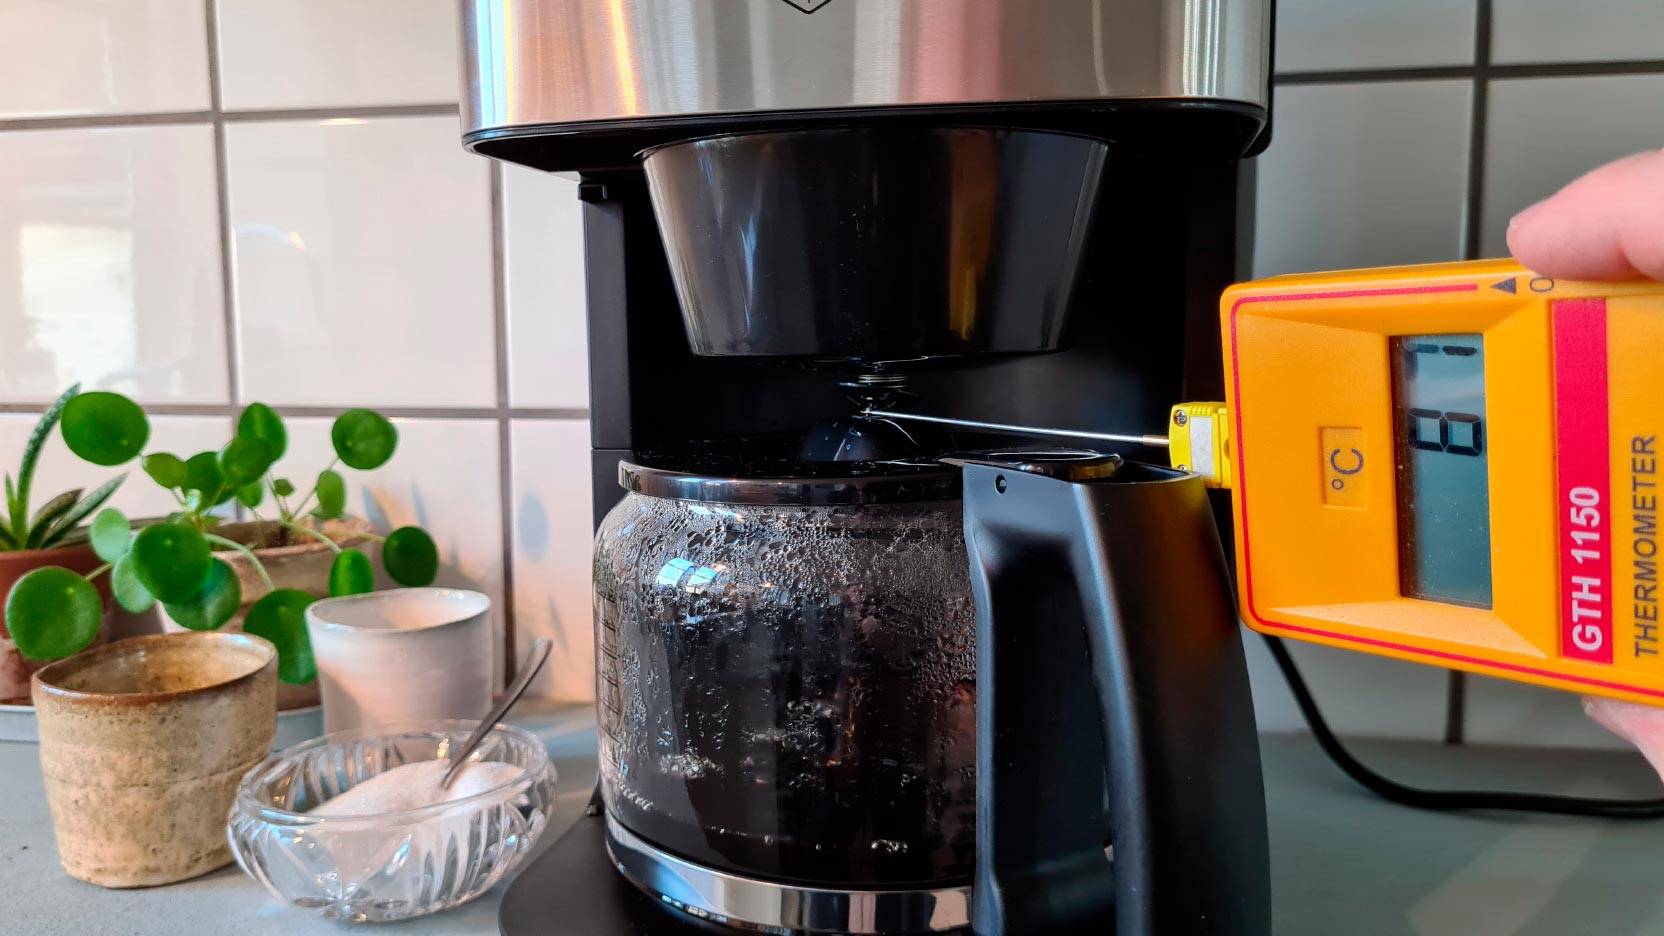 Billede fra test af kaffemaskine med kaffekværn OBH Nordica Grind Aroma OP8328S0 - måling af temperatur